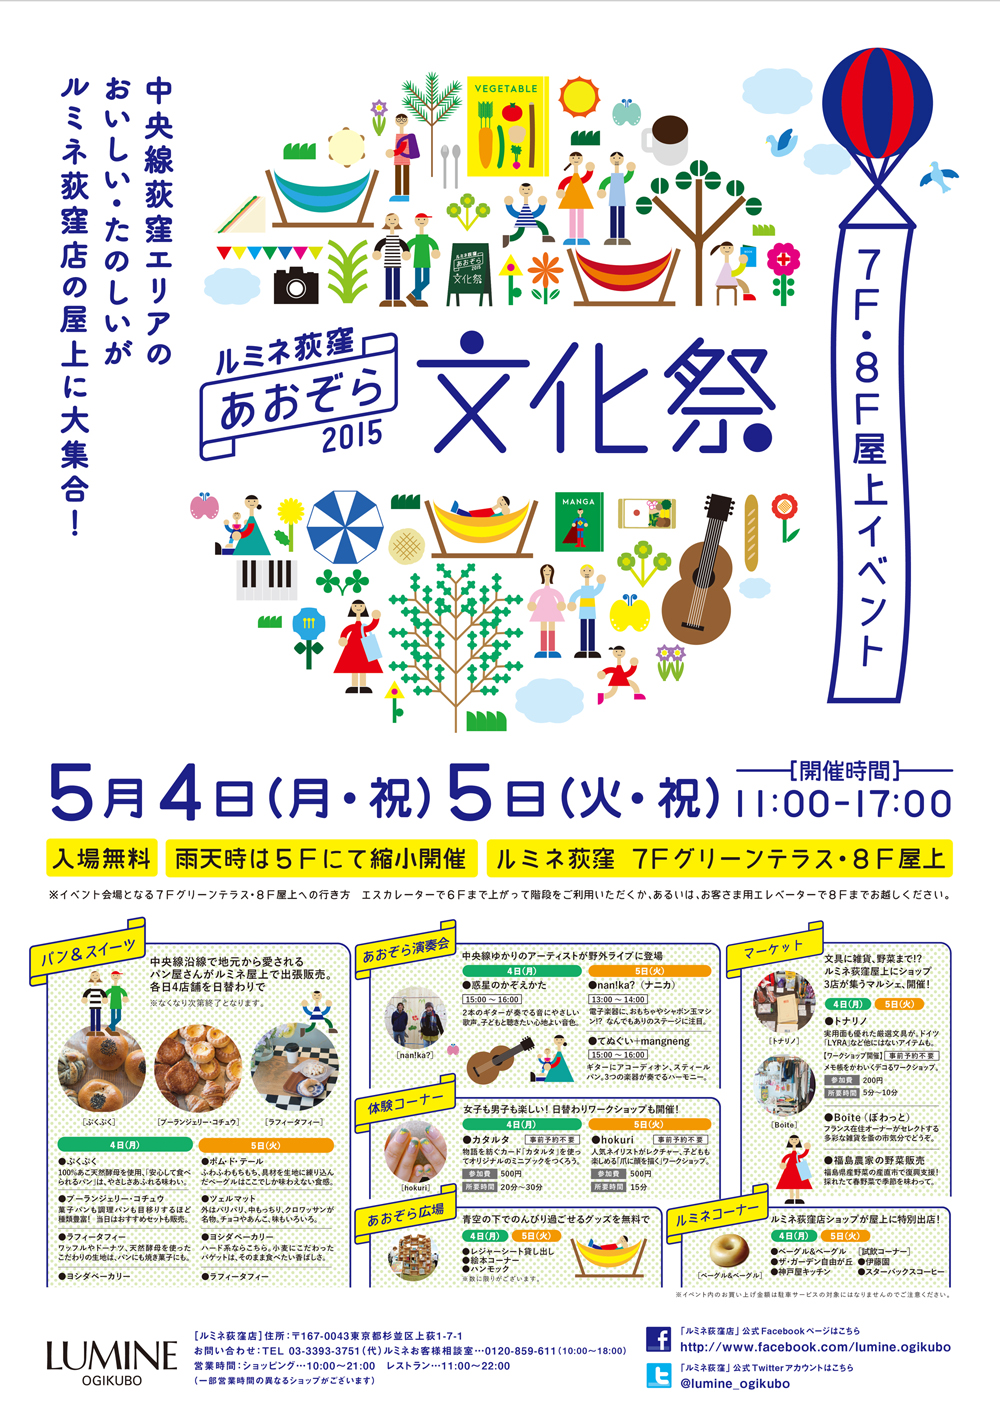 ルミネ荻窪にて あおぞら文化祭15 開催します リライト C 株式会社リライト コミュニティデザイン事業部